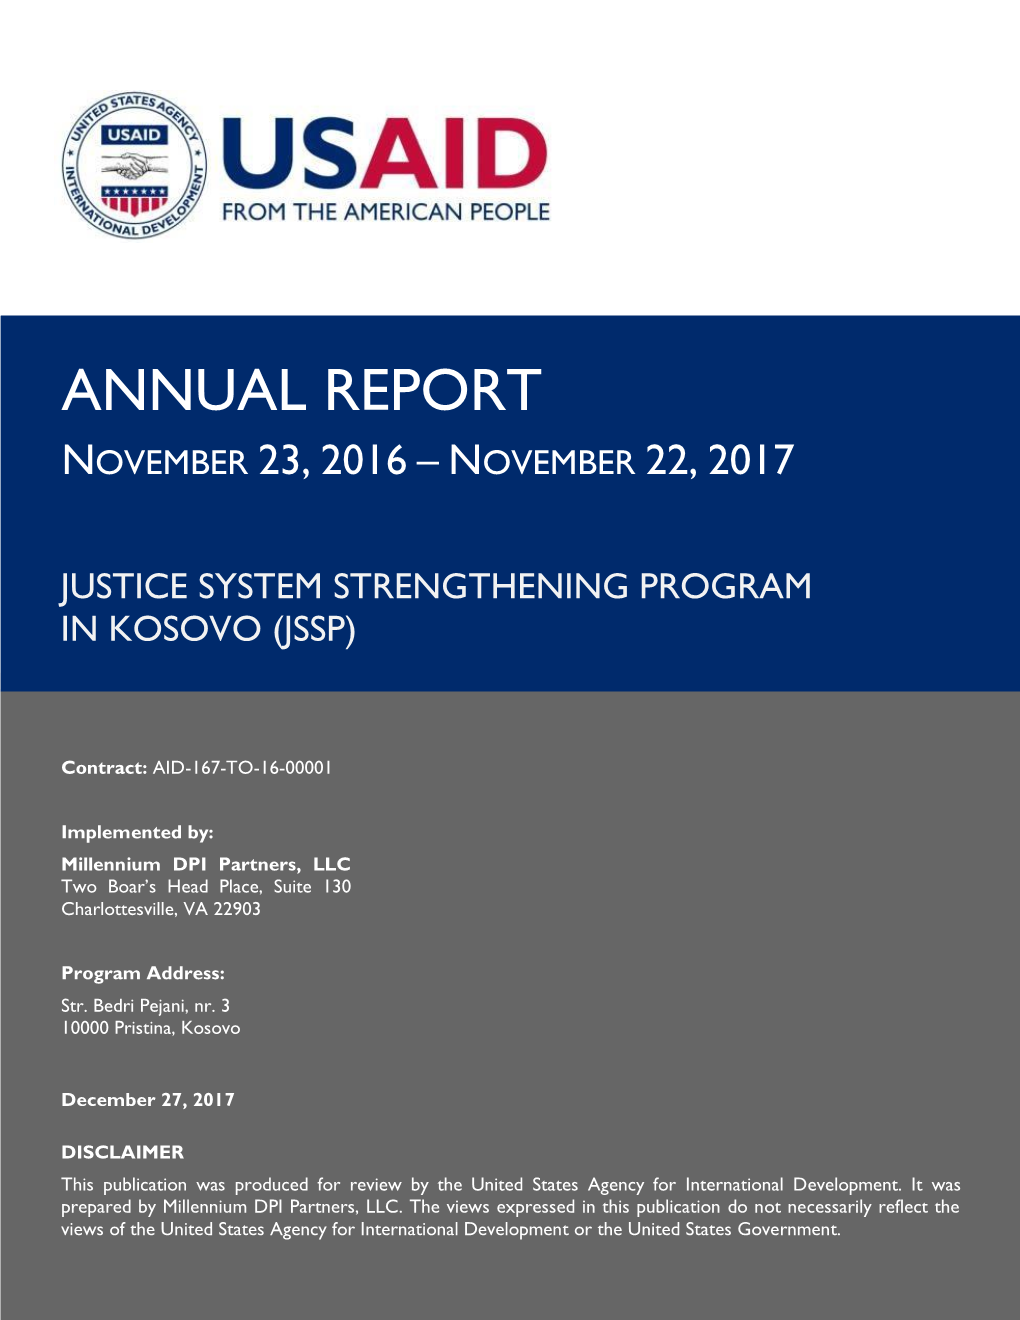 JSSP in Kosovo Annual Report, Nov 23, 2016